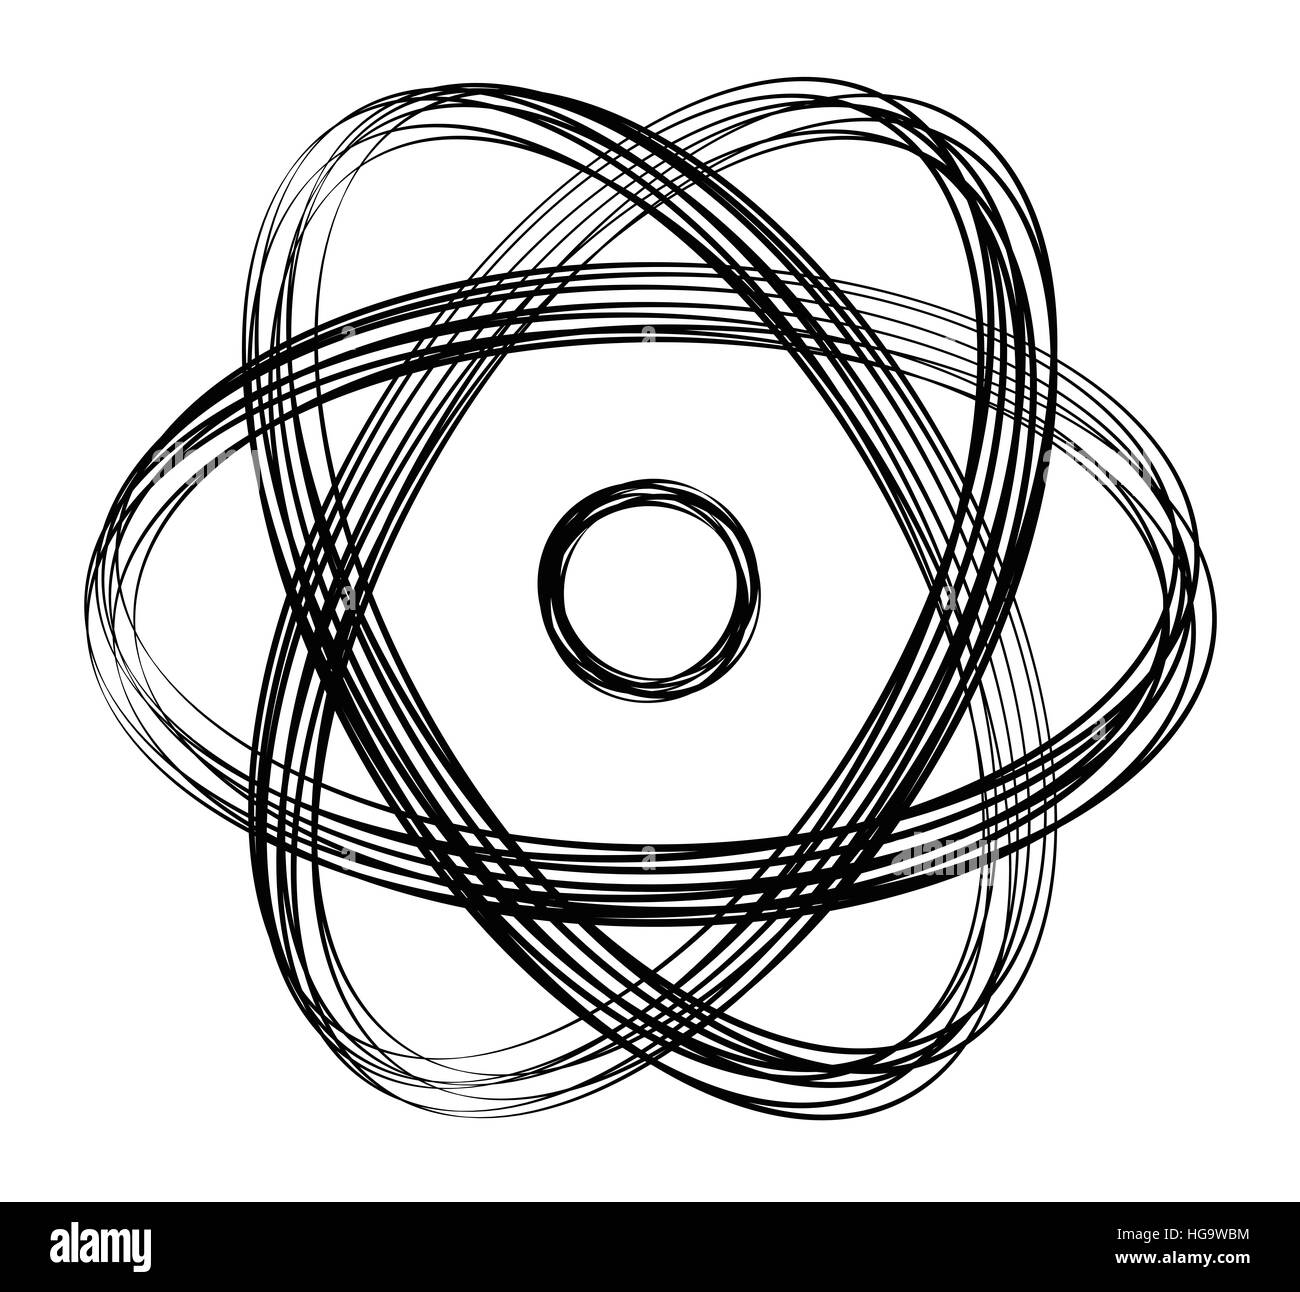 Atomare Symbol mit schwarzen Linien. Viele überlappende Saiten erzeugen ein dynamischeren Zeichen. Kern in der Mitte mit drei Ellipsen. Stockfoto